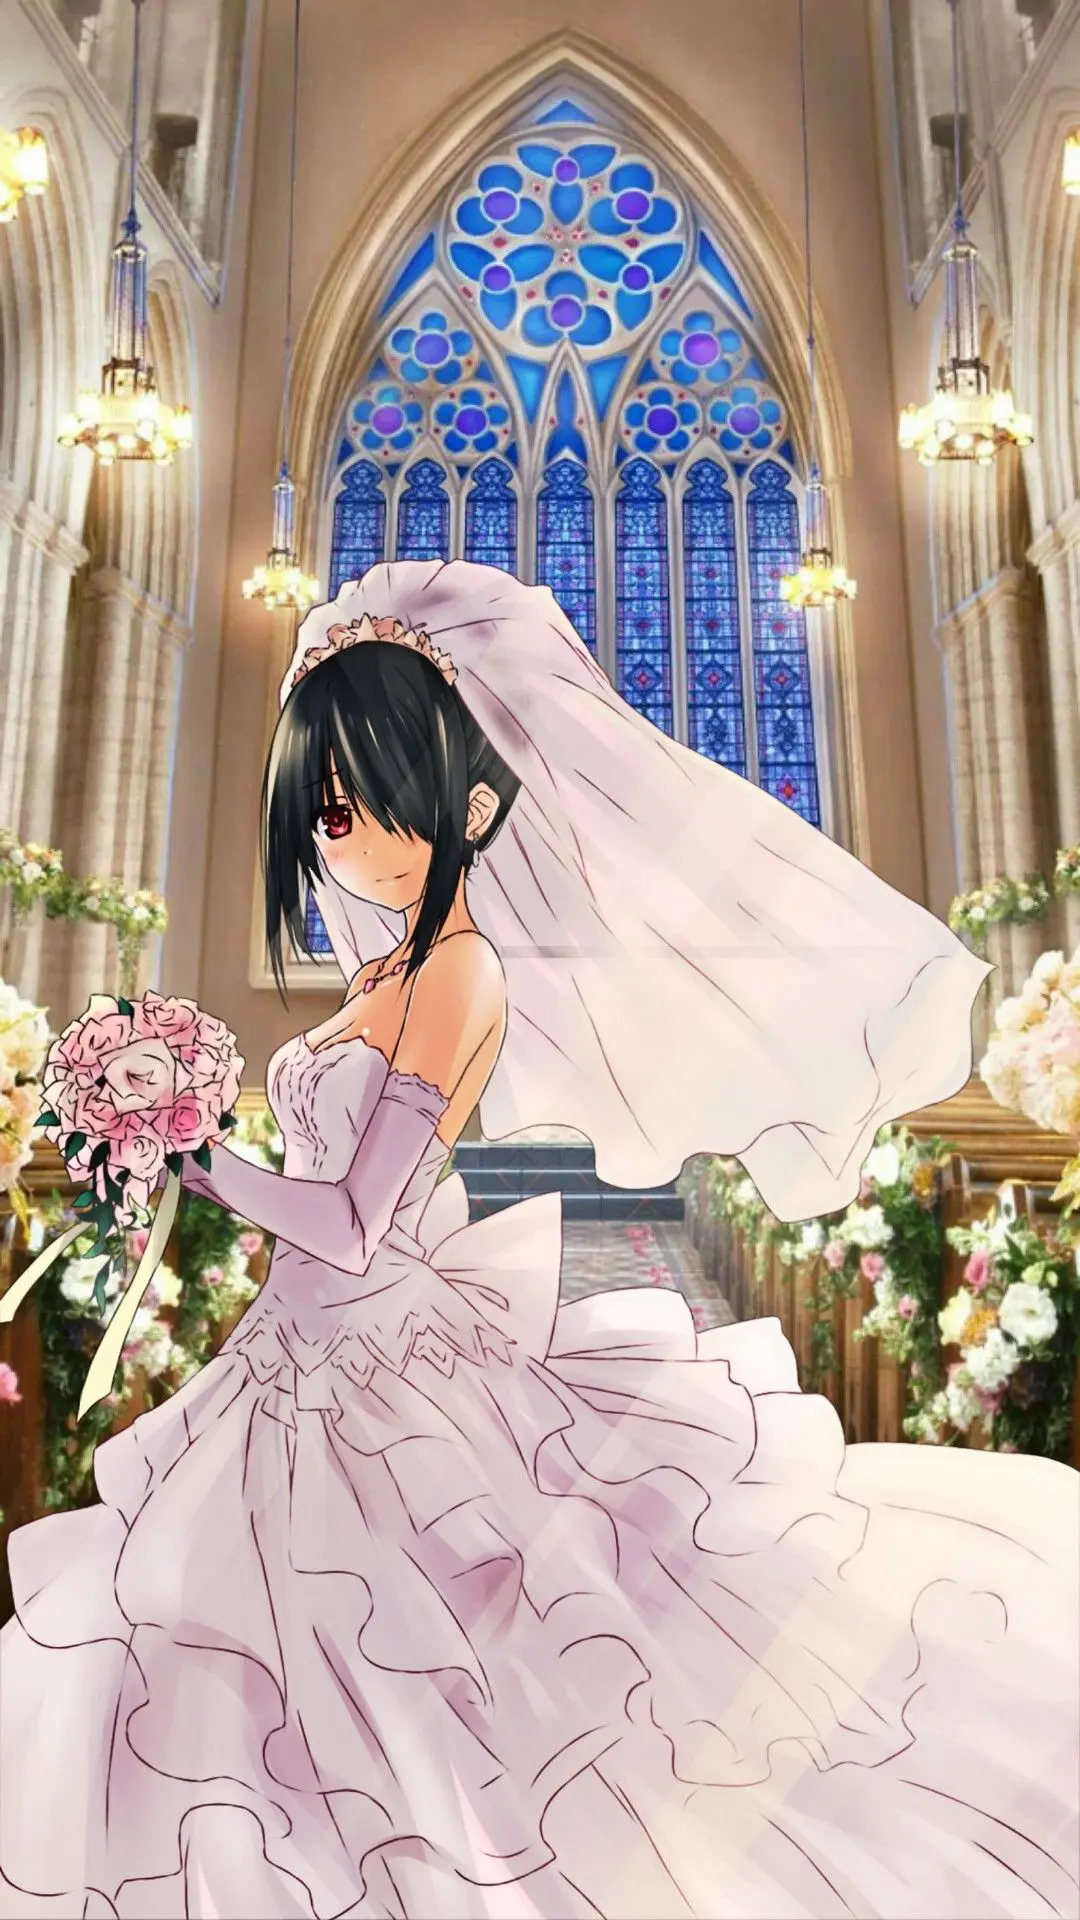 kurumi tokisaki vestido de novia - Qué significa Kurumi Tokisaki